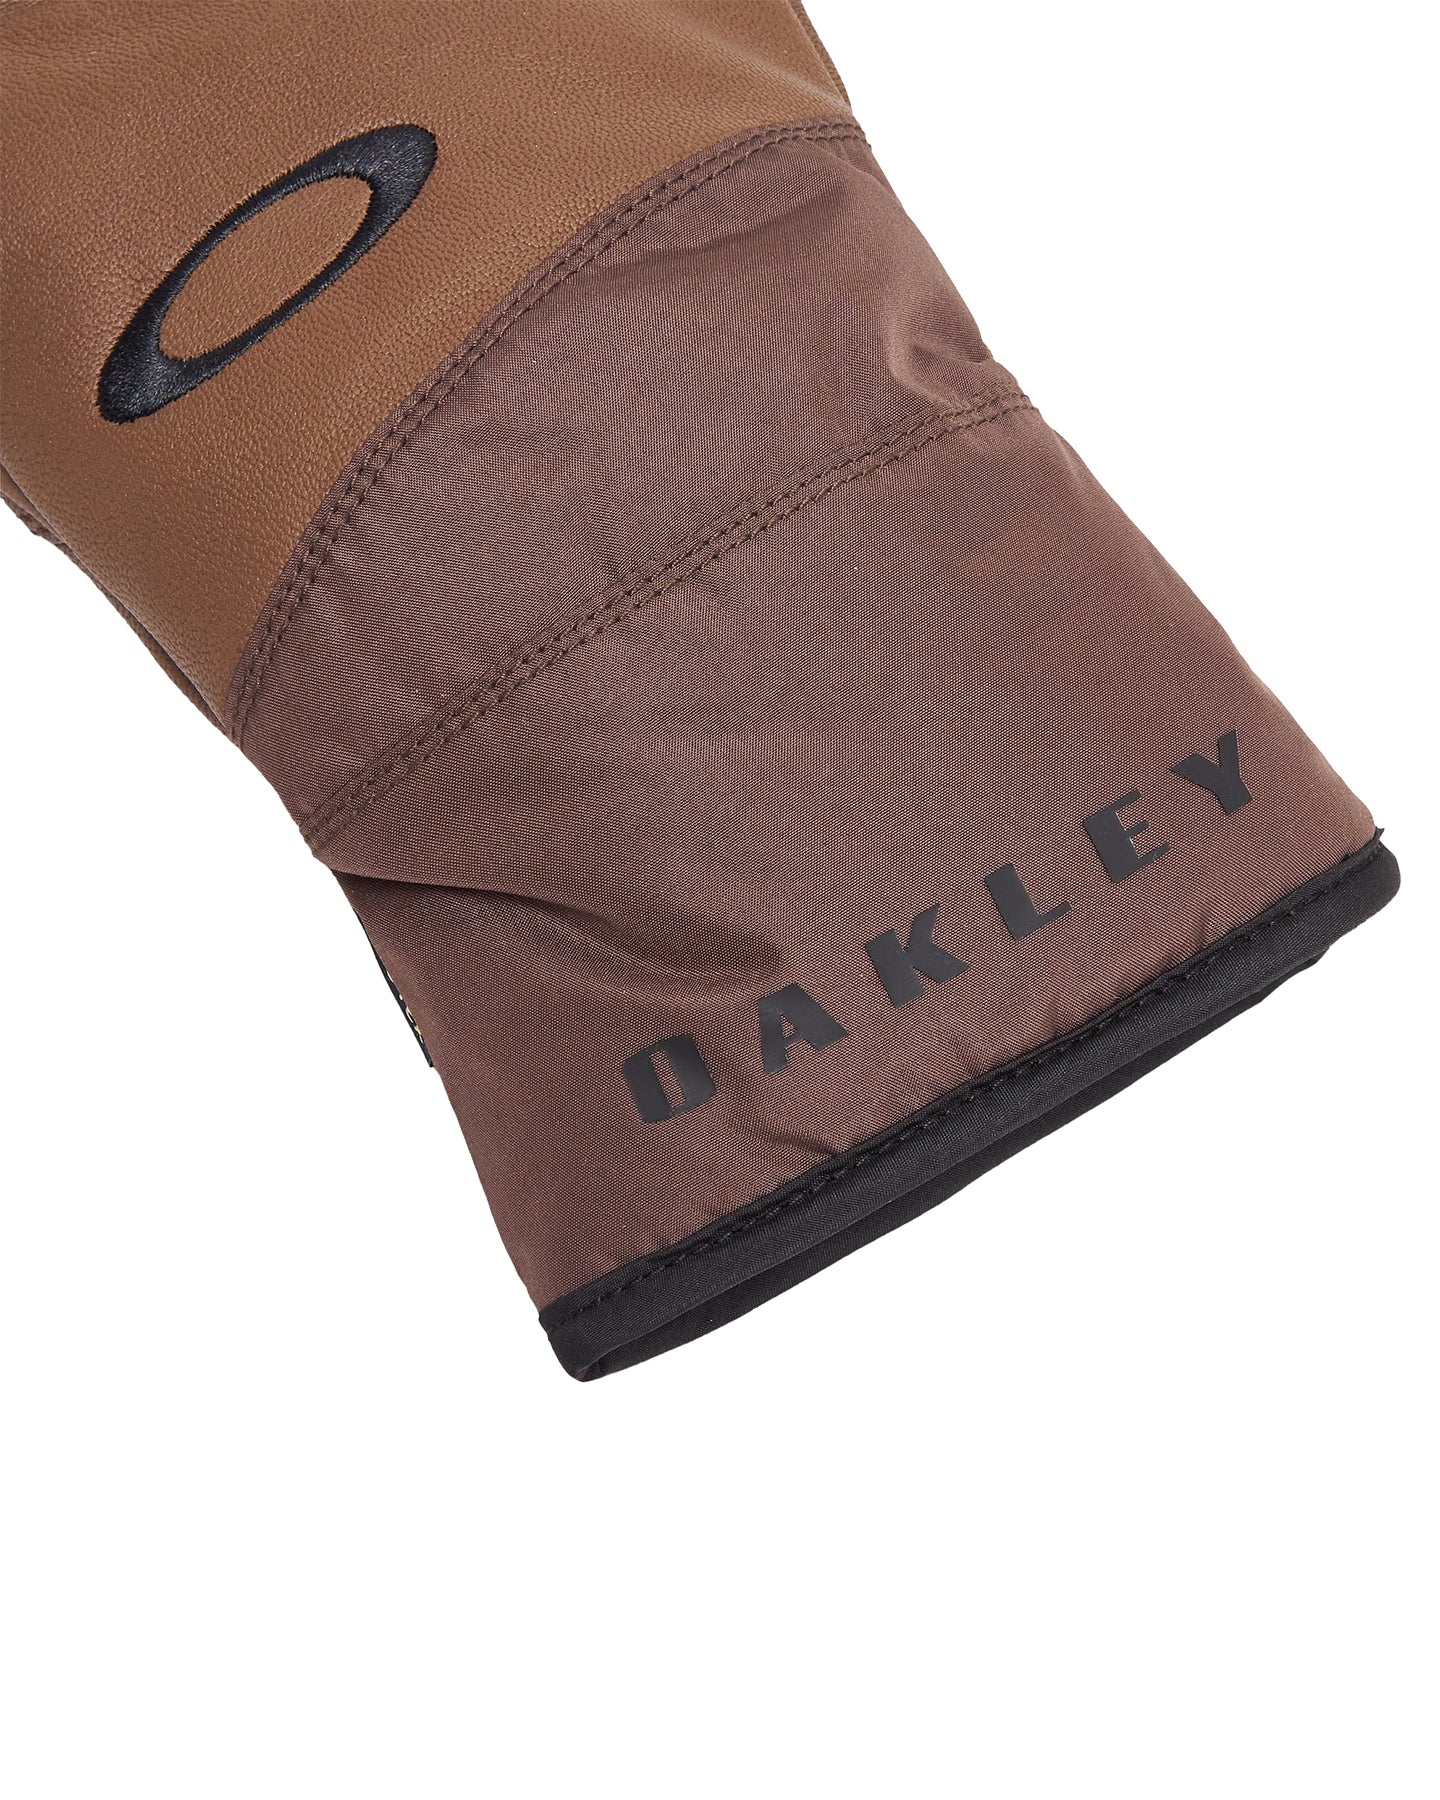 Oakley Ellipse Goatskin Glove - Carafe Men's Snow Gloves & Mittens - SnowSkiersWarehouse